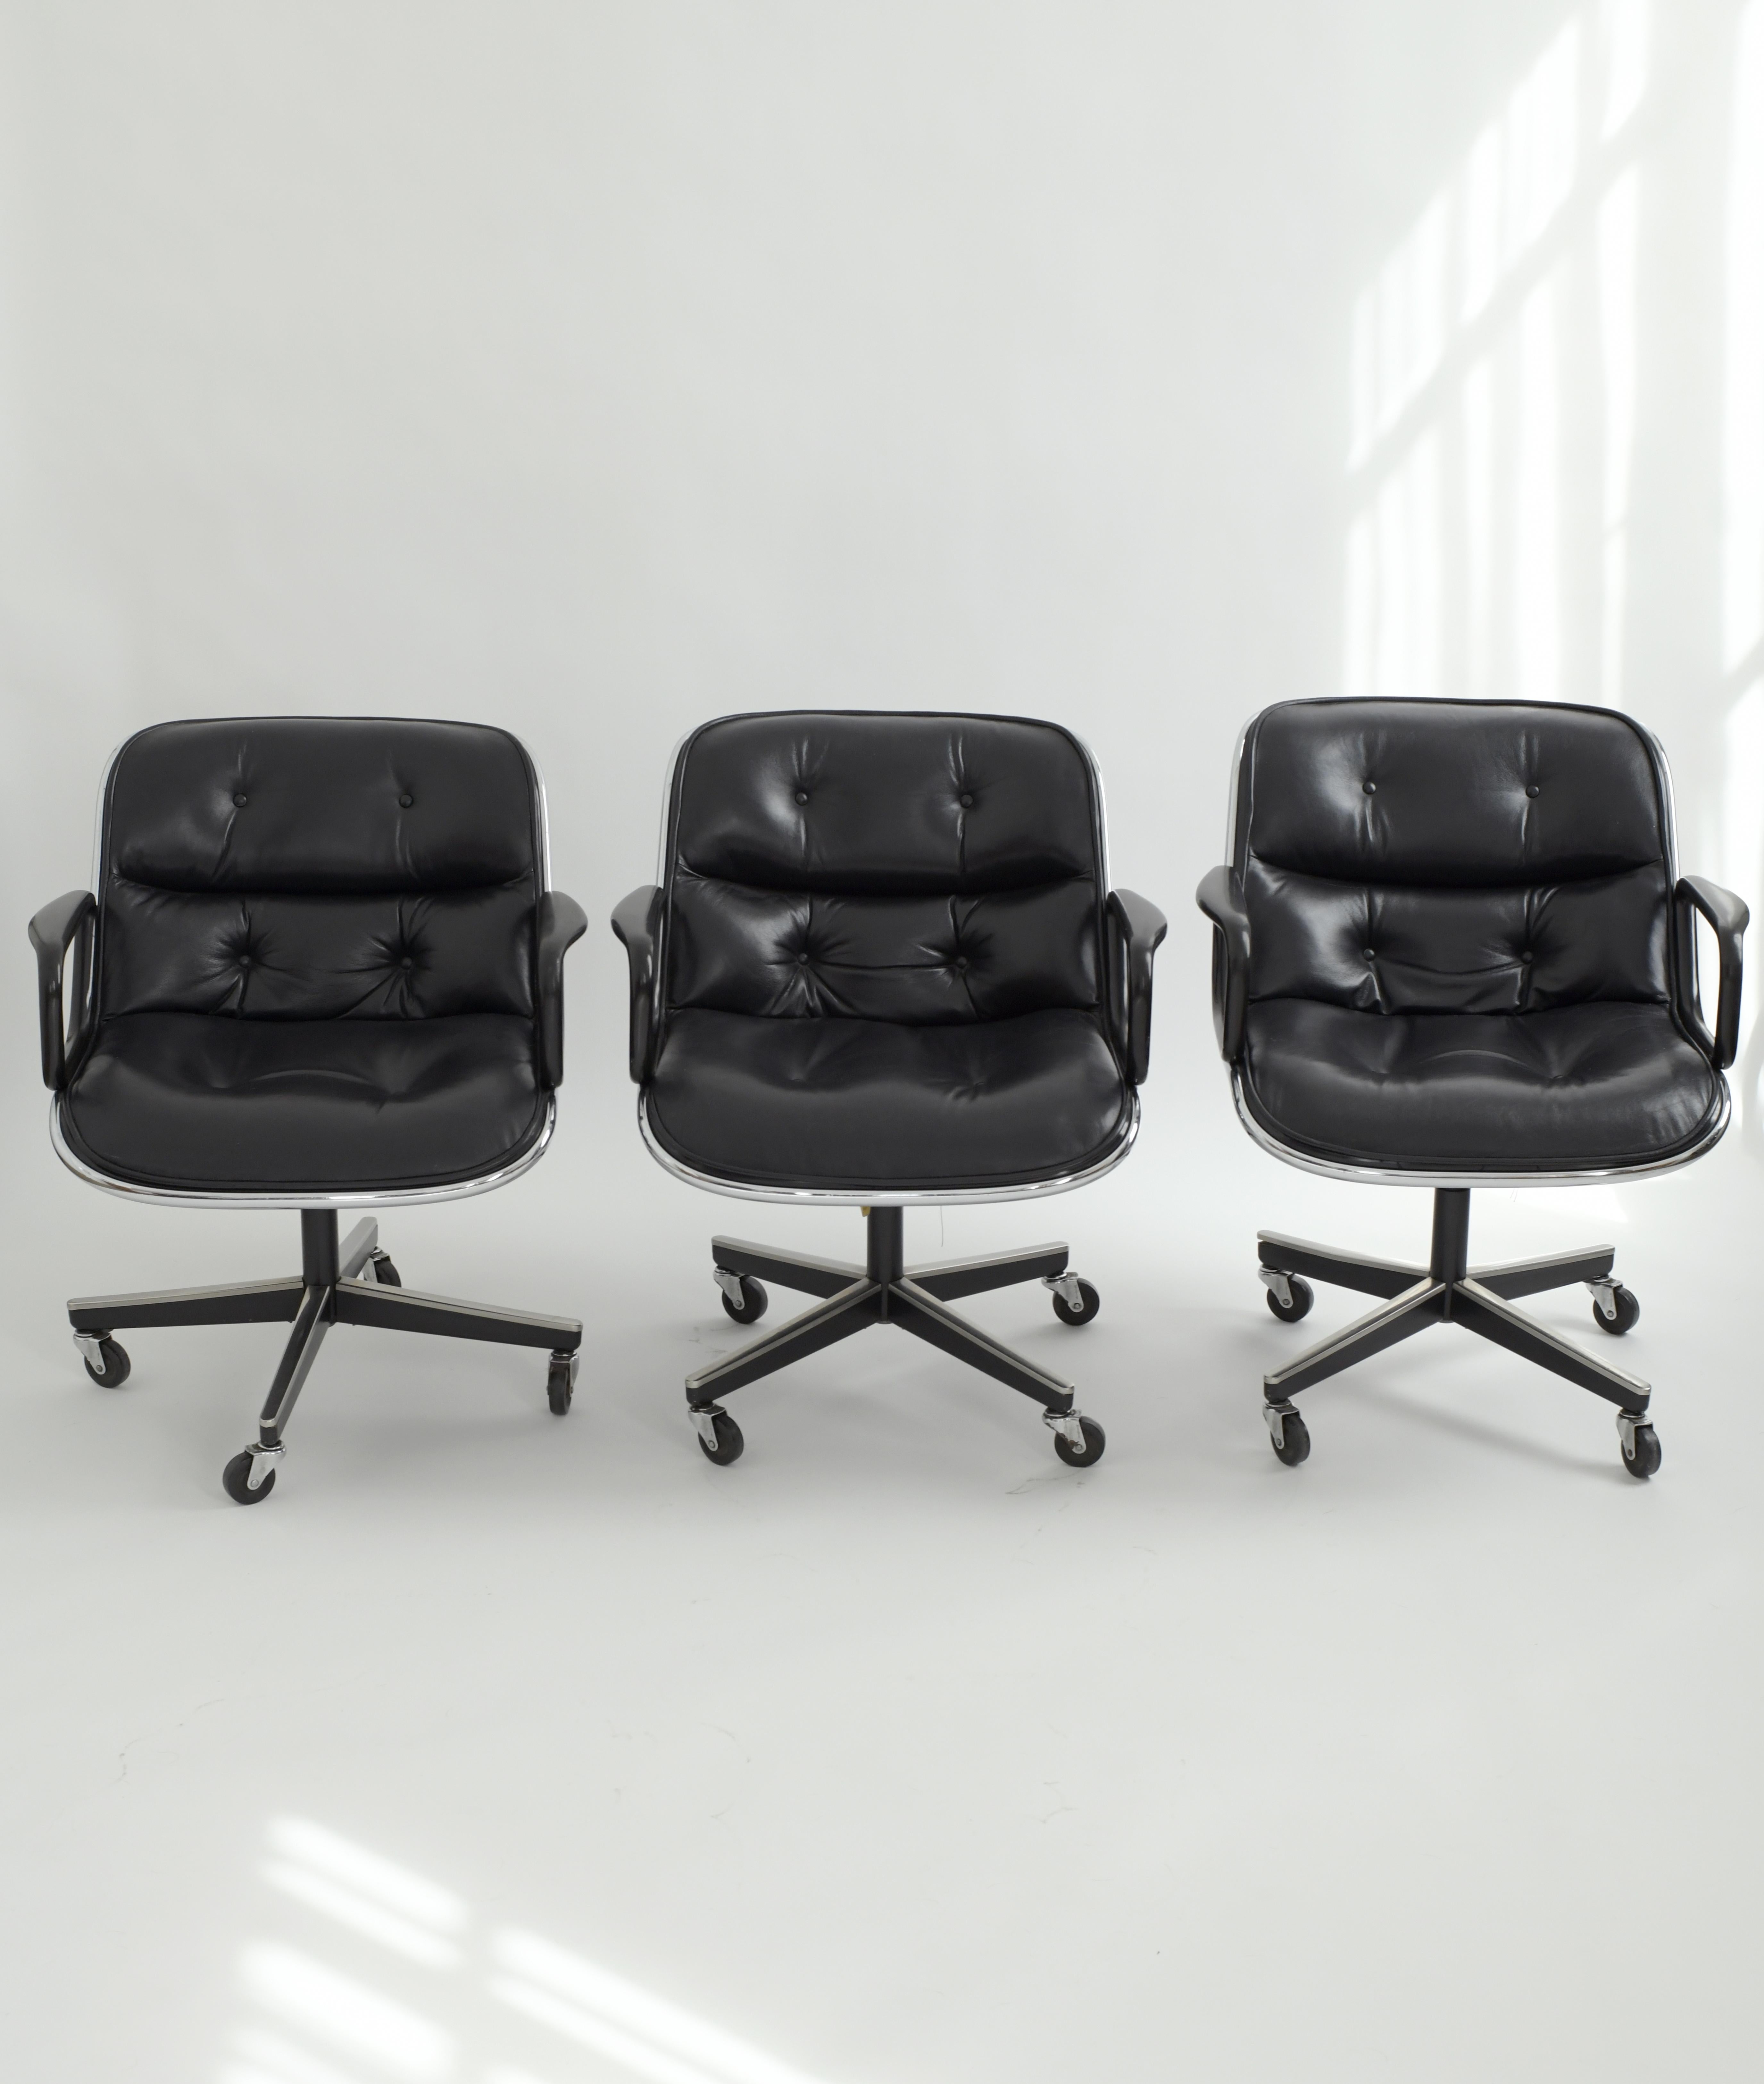 Fauteuils de direction de Charles Pollock pour Knoll en cuir noir. Ces magnifiques fauteuils de direction en cuir noir sont incroyablement confortables et s'intègrent parfaitement dans n'importe quel bureau. Cet ensemble a été produit en 1981 et